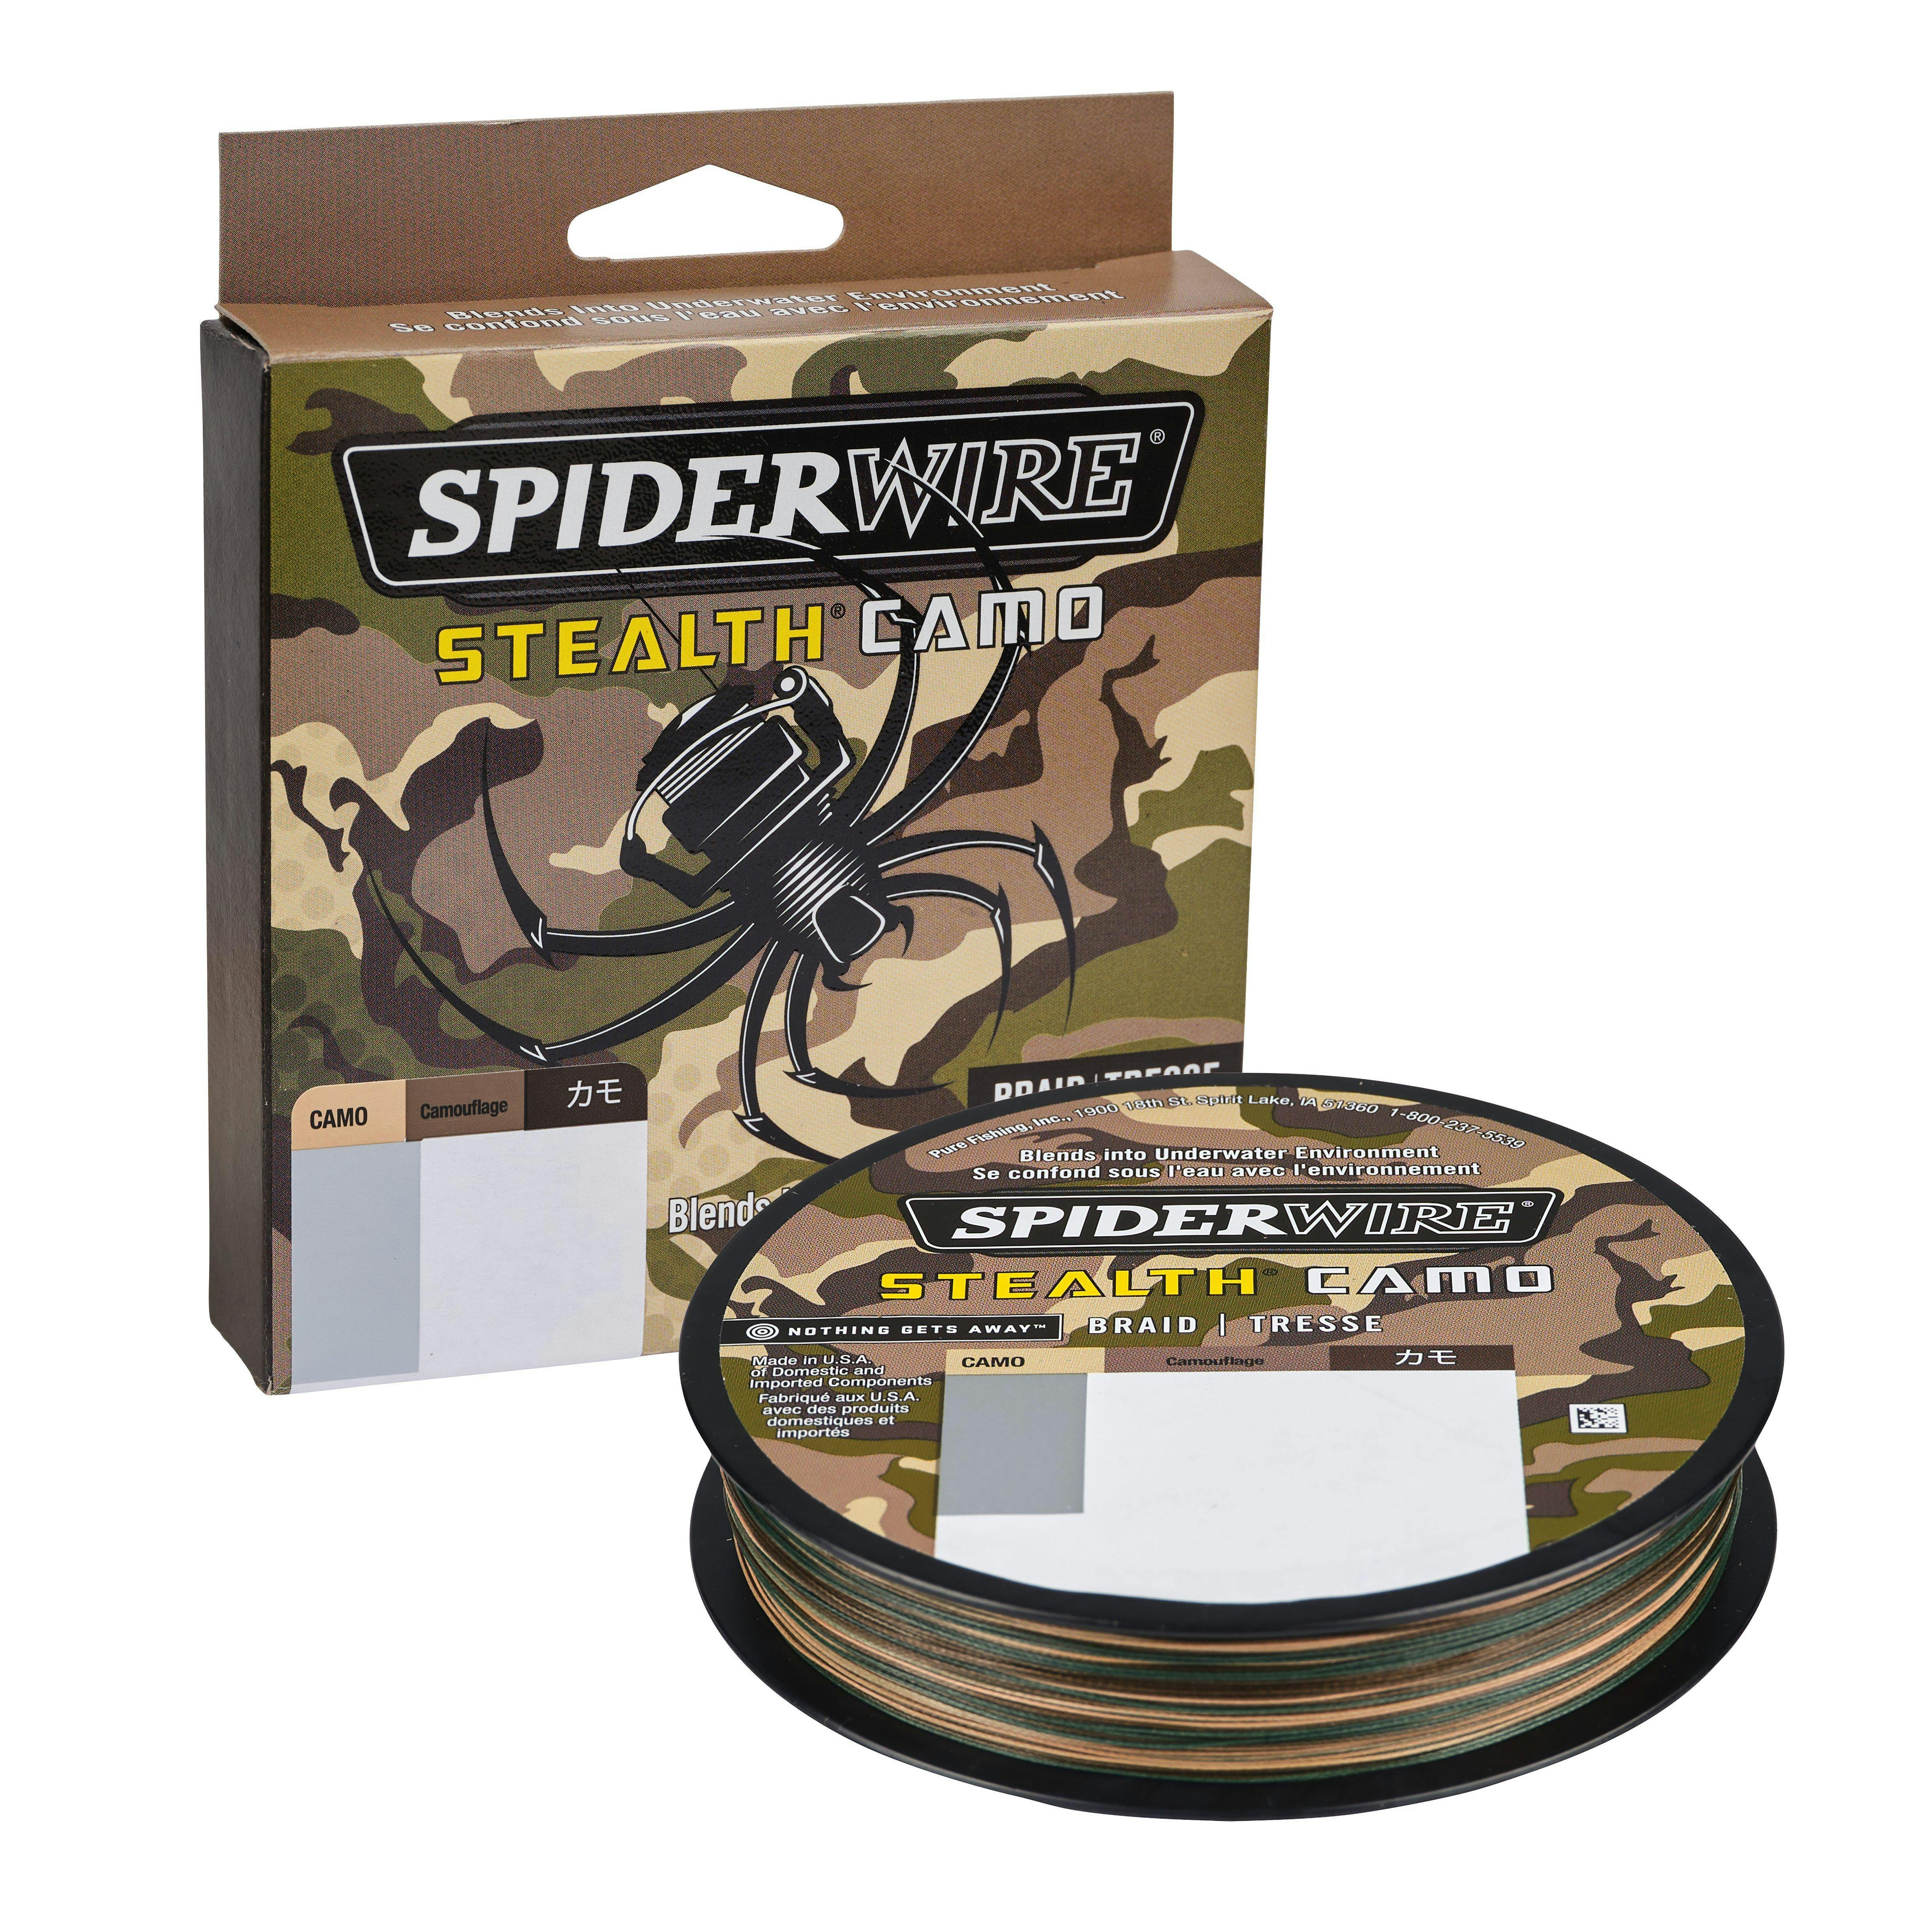 Spiderwire Stealth Camo Braid